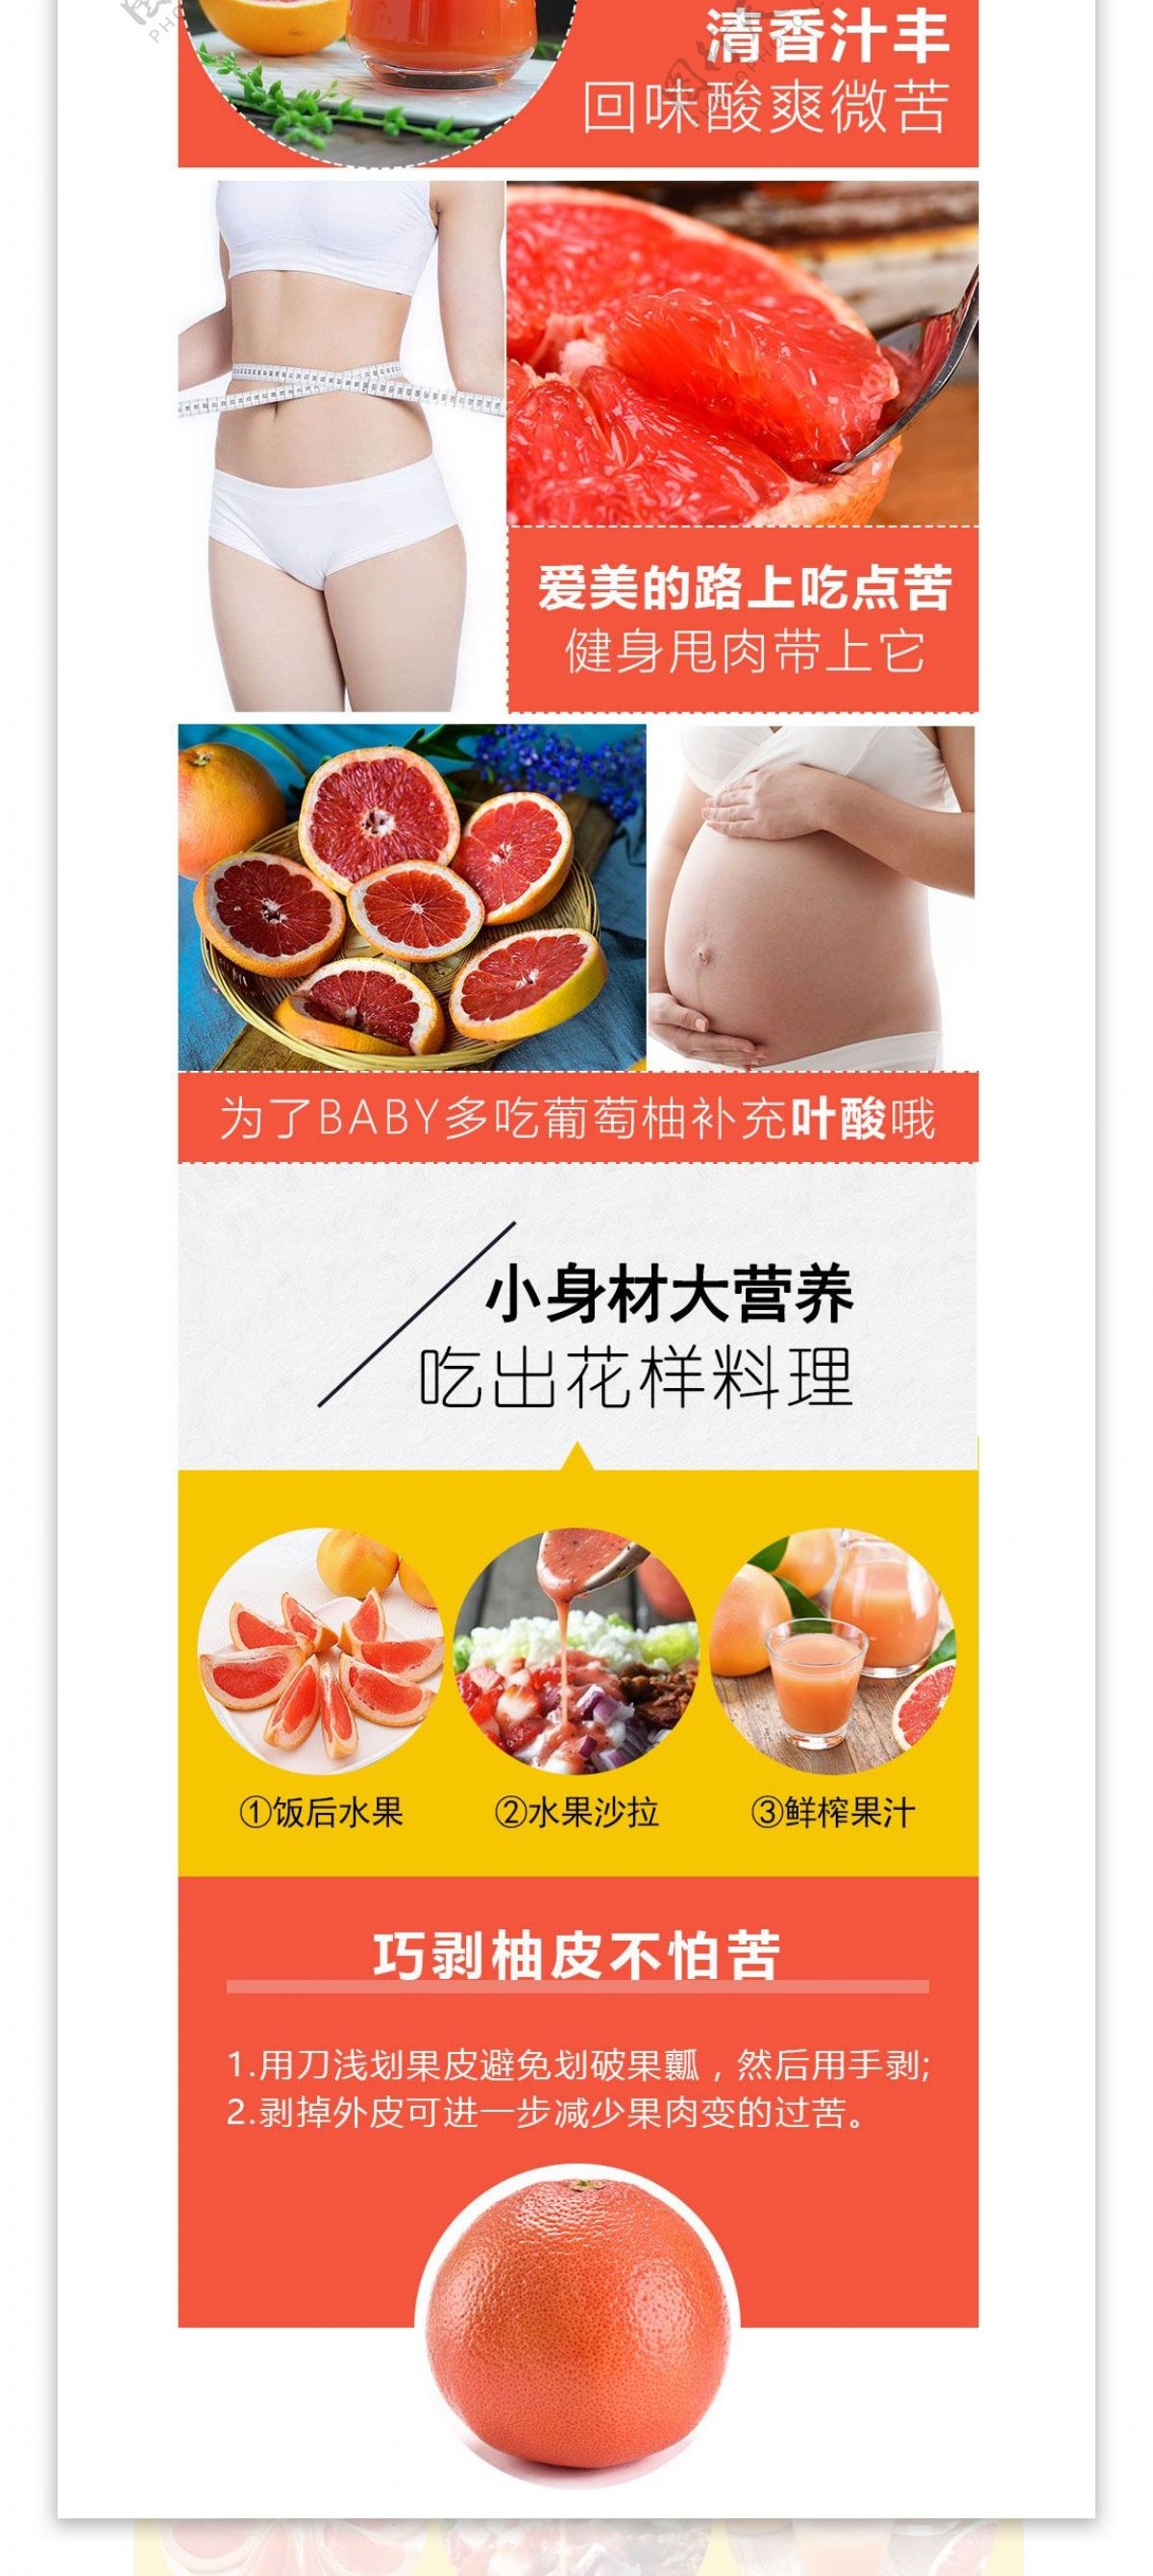 电商淘宝台湾葡萄红西柚柚详情页790